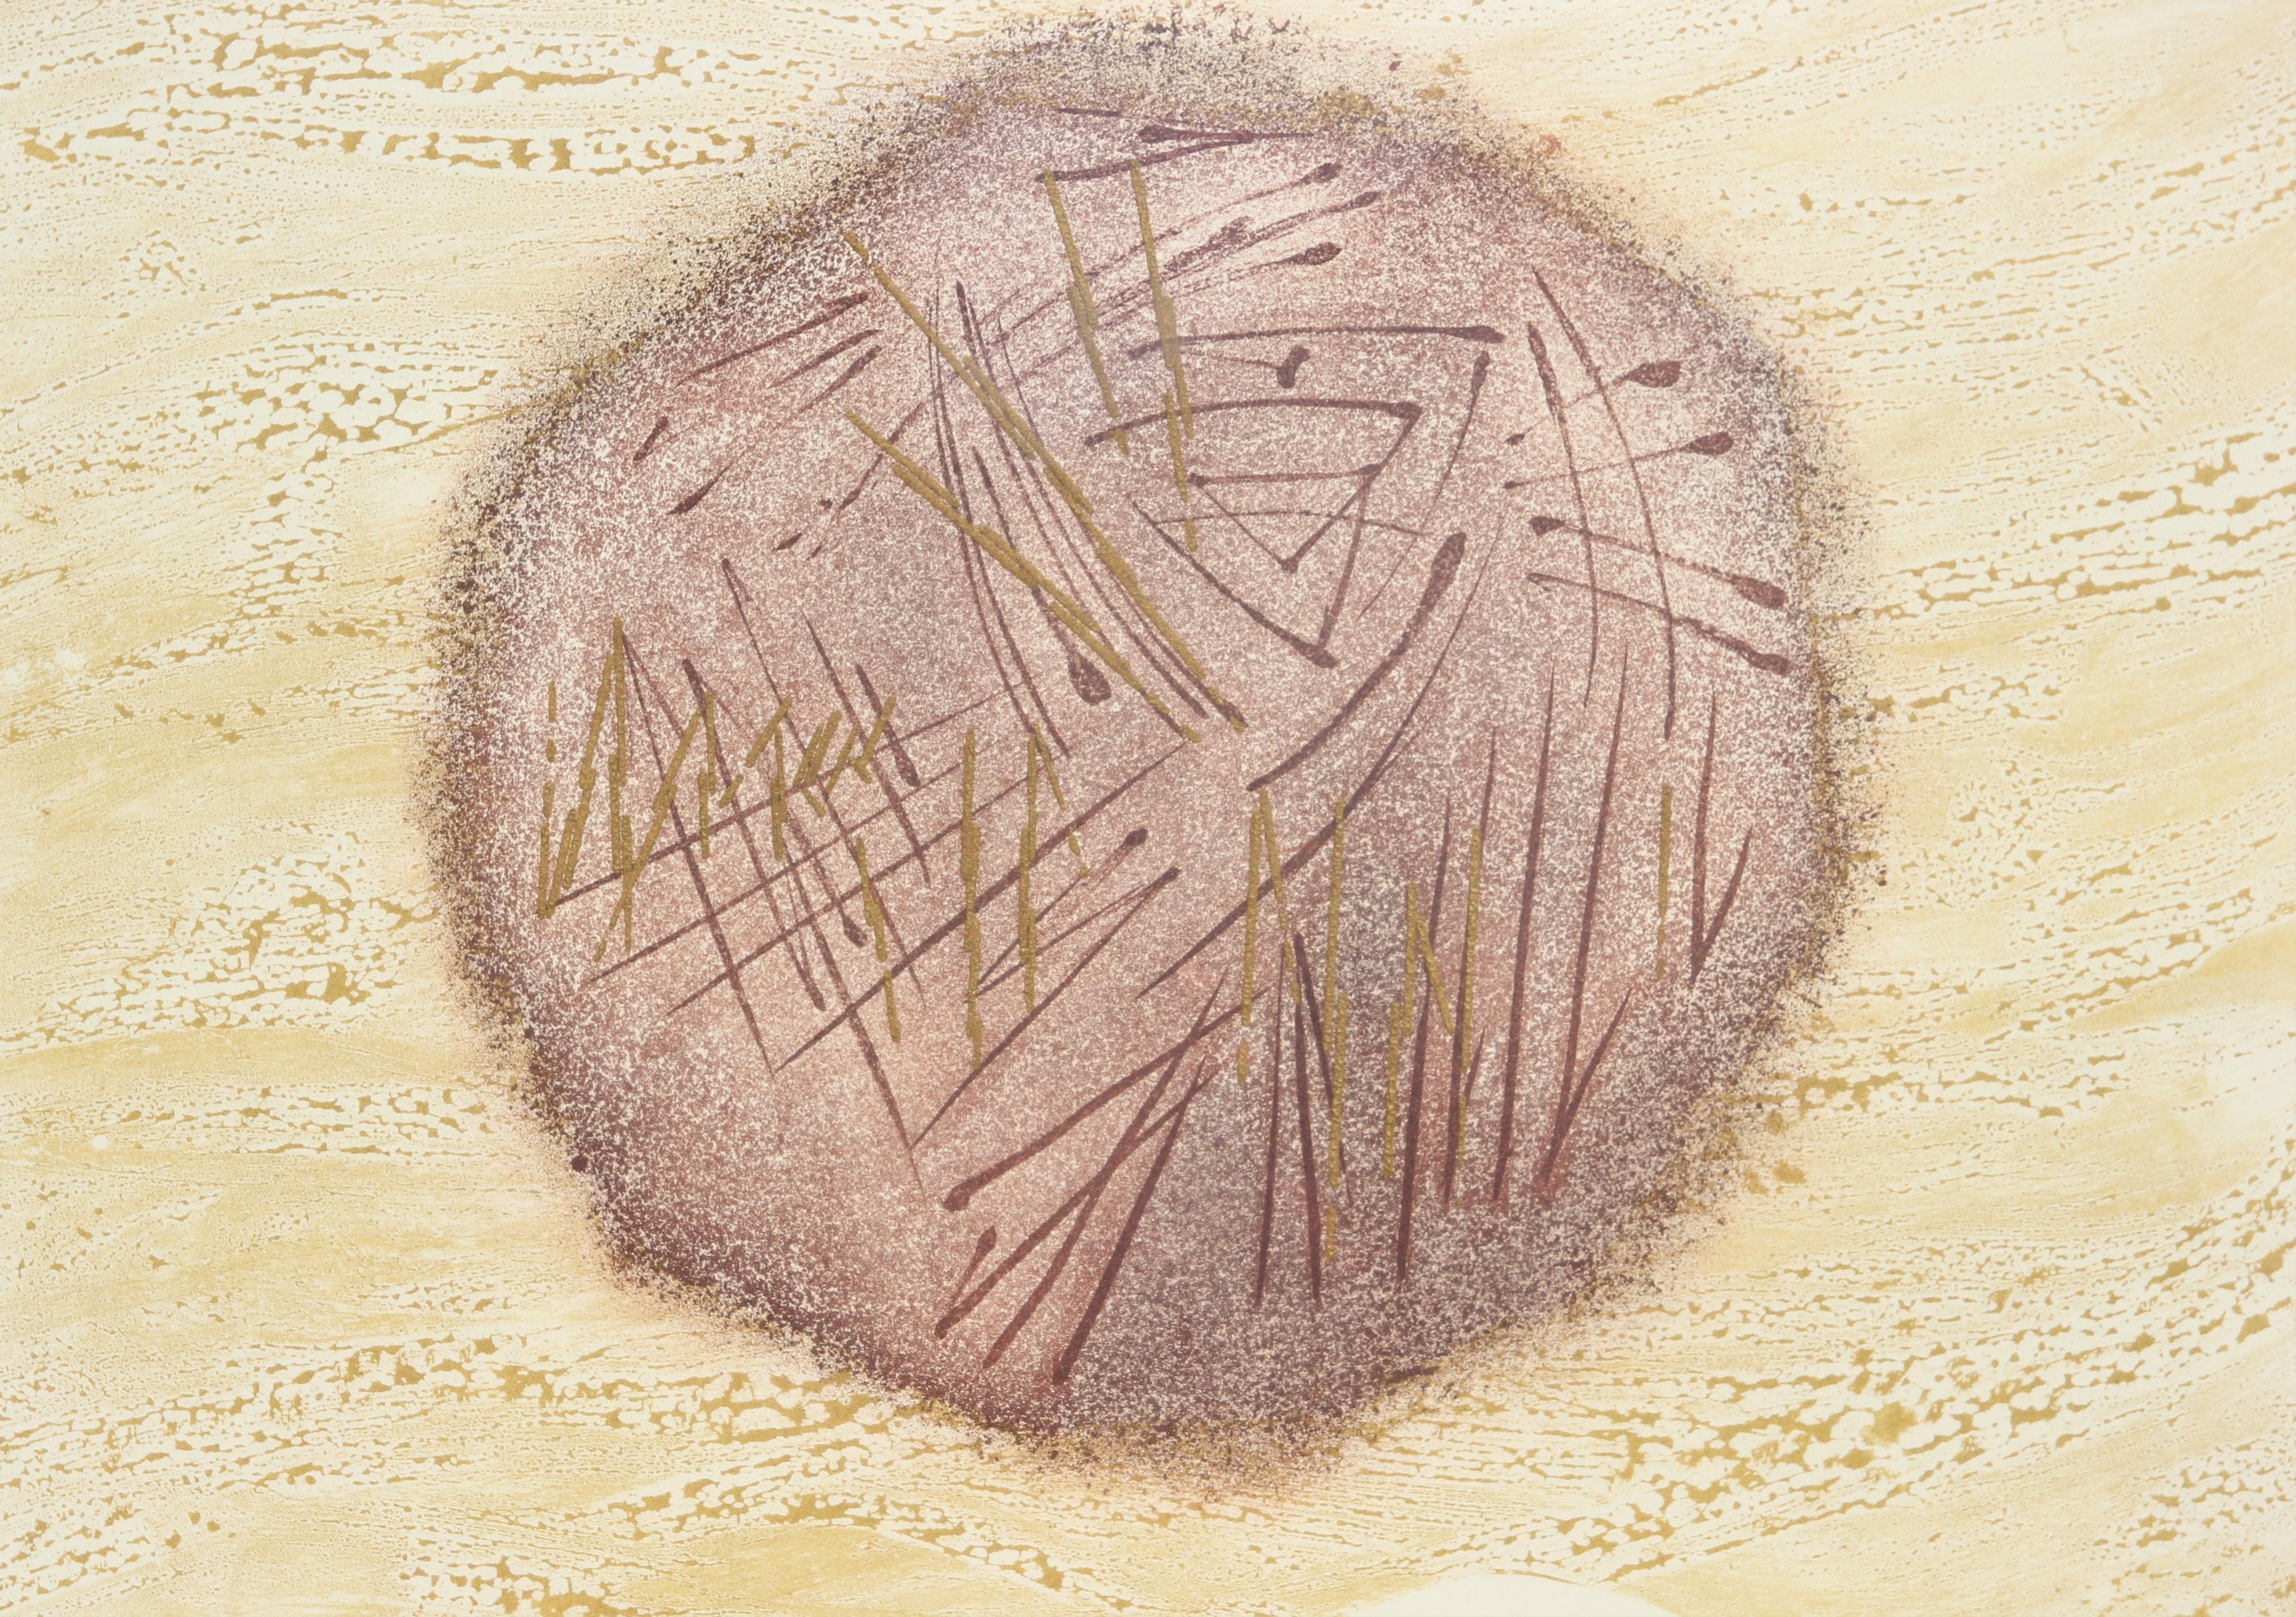 Impression abstraite aux tons neutres d'un paysage surréaliste représentant un cercle face à face avec des embossages - Print de Unknown